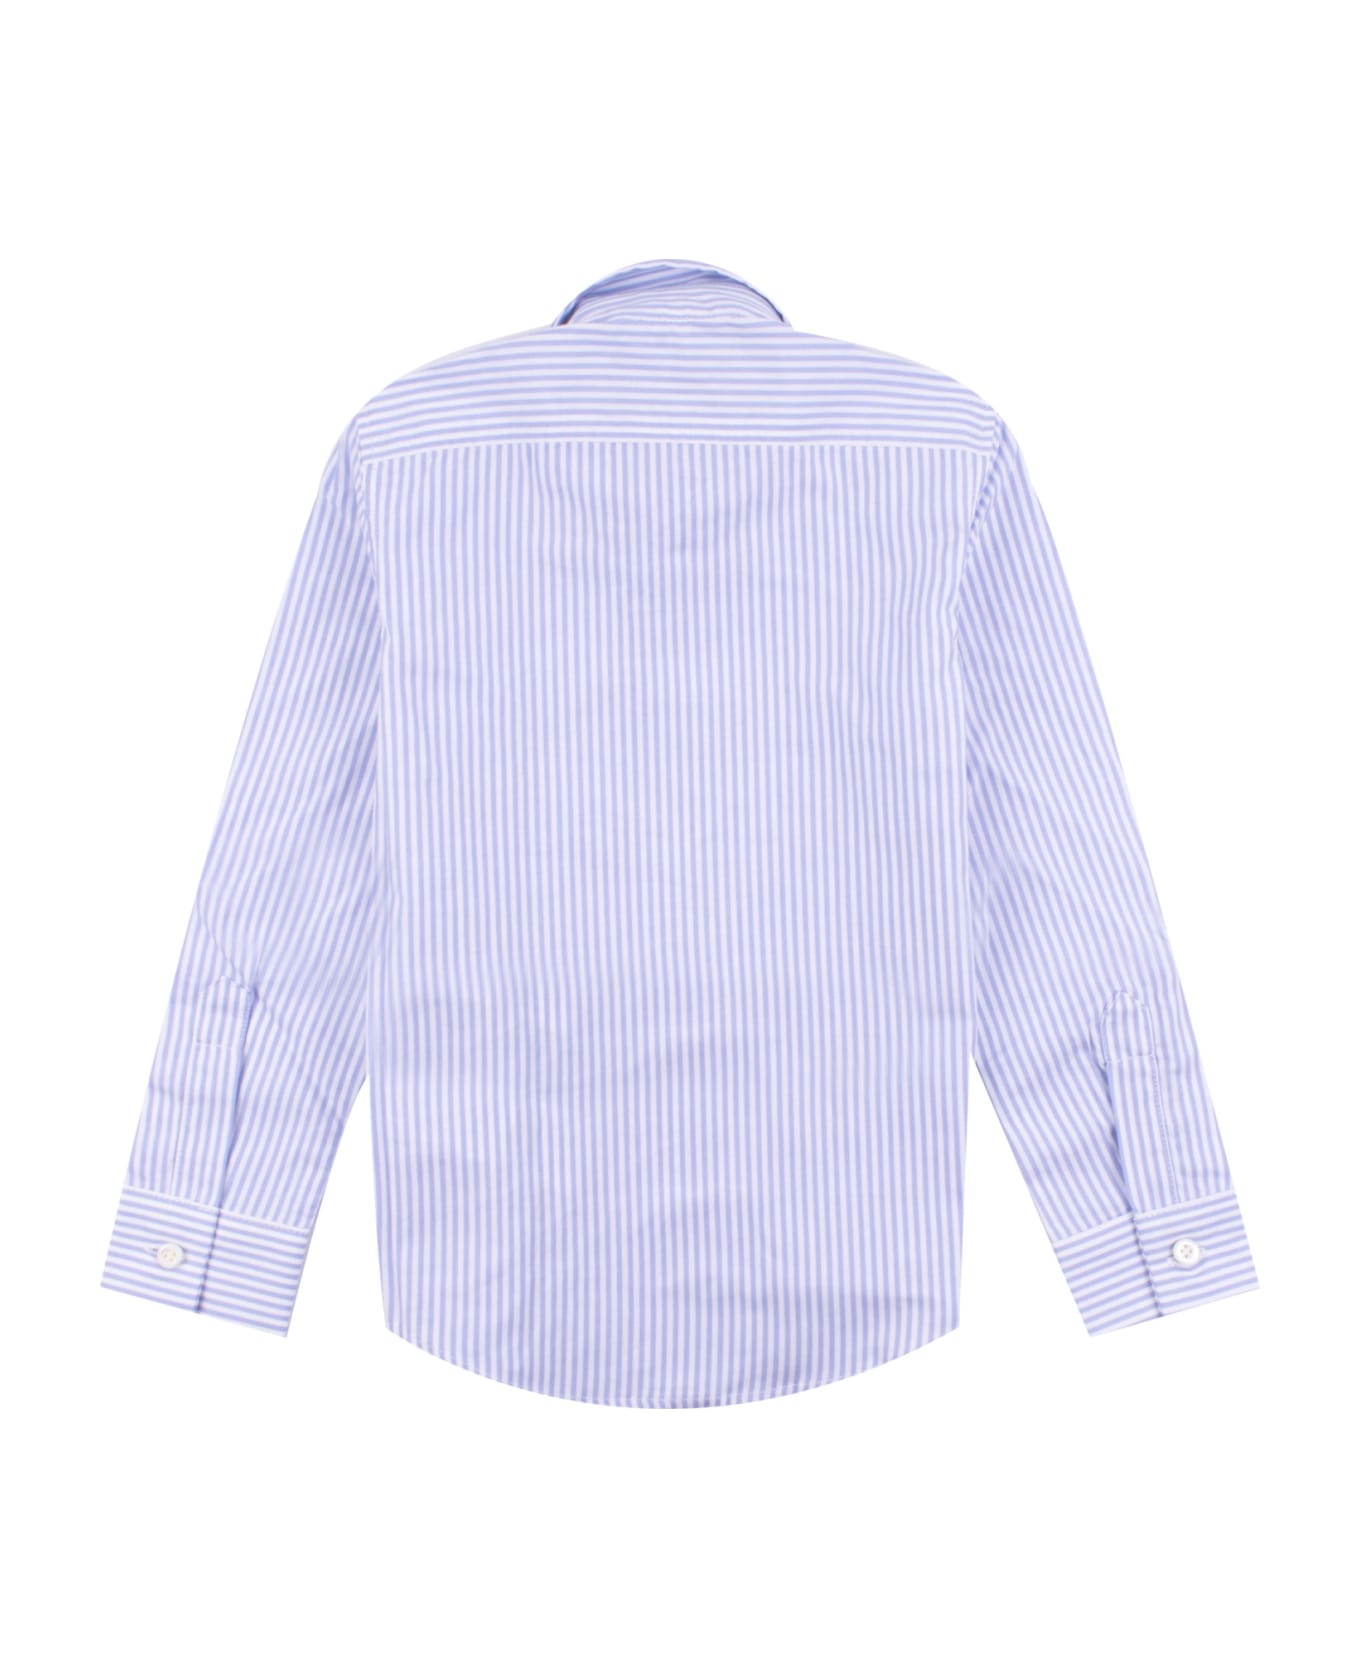 Dsquared2 Camicia In Cotone - Light blue シャツ